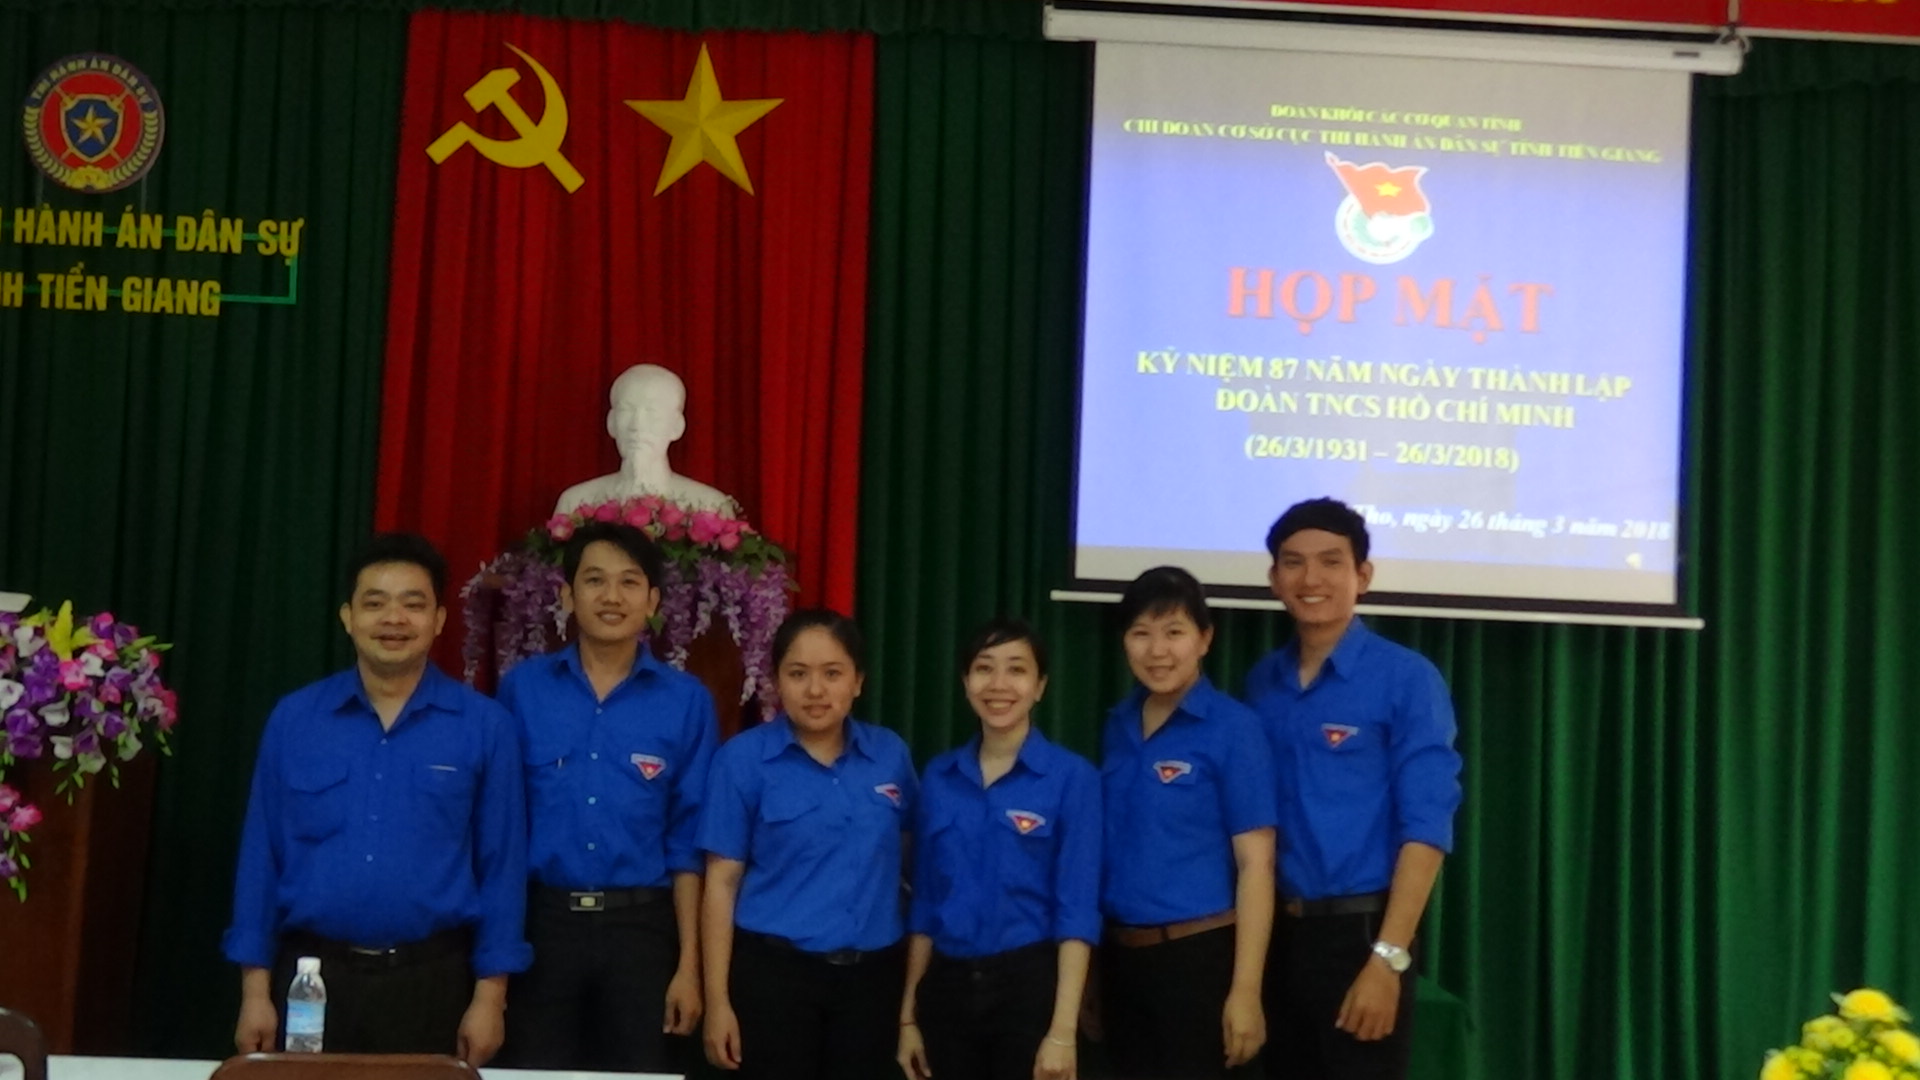 Chi đoàn Cục Thi hành án dân sự tỉnh Tiền Giang tổ chức họp mặt kỷ niệm 87 năm ngày thành lập Đoàn TNCS Hồ Chí Minh (26/3/1931-26/3/2018)